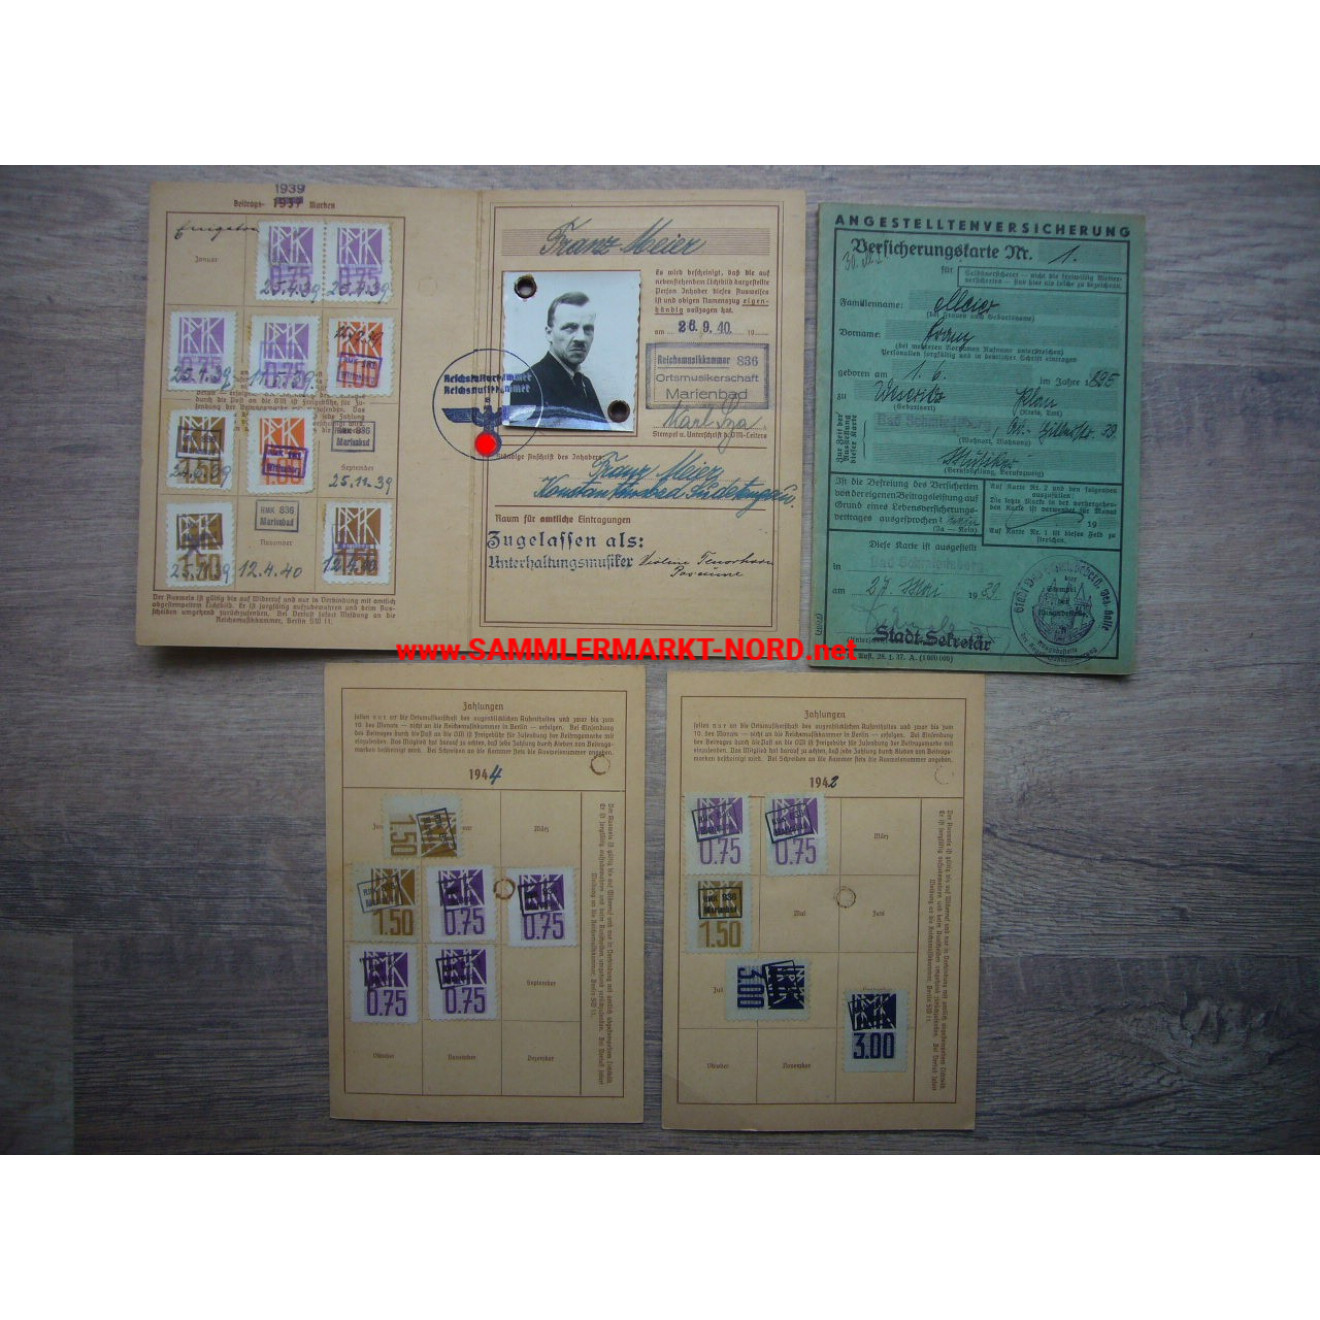 Reichsmusikkammer - Vorläufiger Ausweis